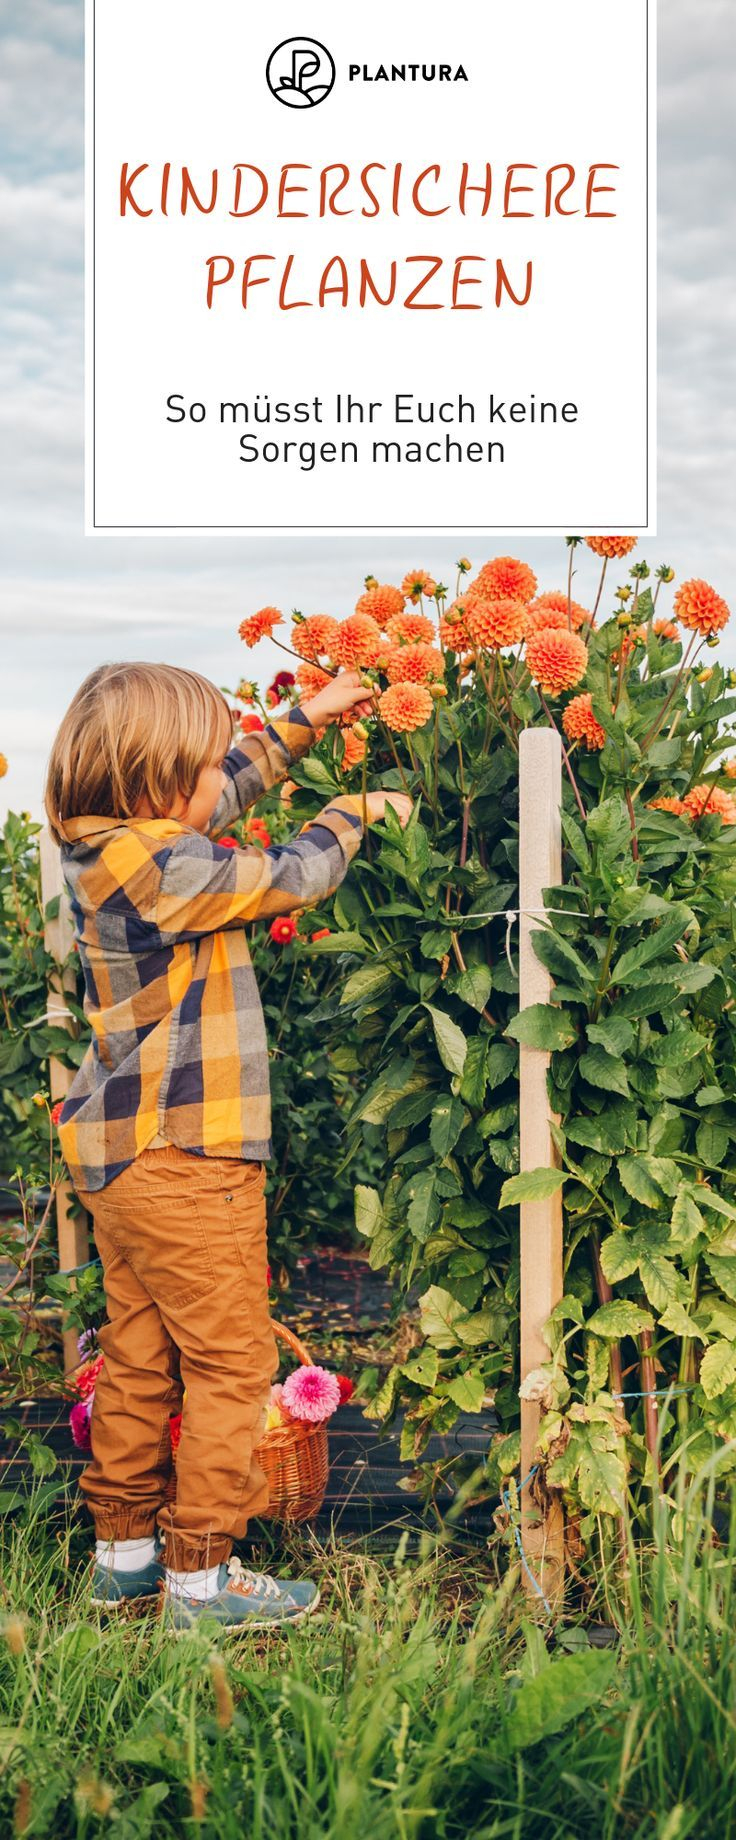 Kinder- Und Tiersichere Pflanzen Für Den Garten: Unsere Top 10 - Garten ganzes Giftige Pflanzen Für Kinder Bilder